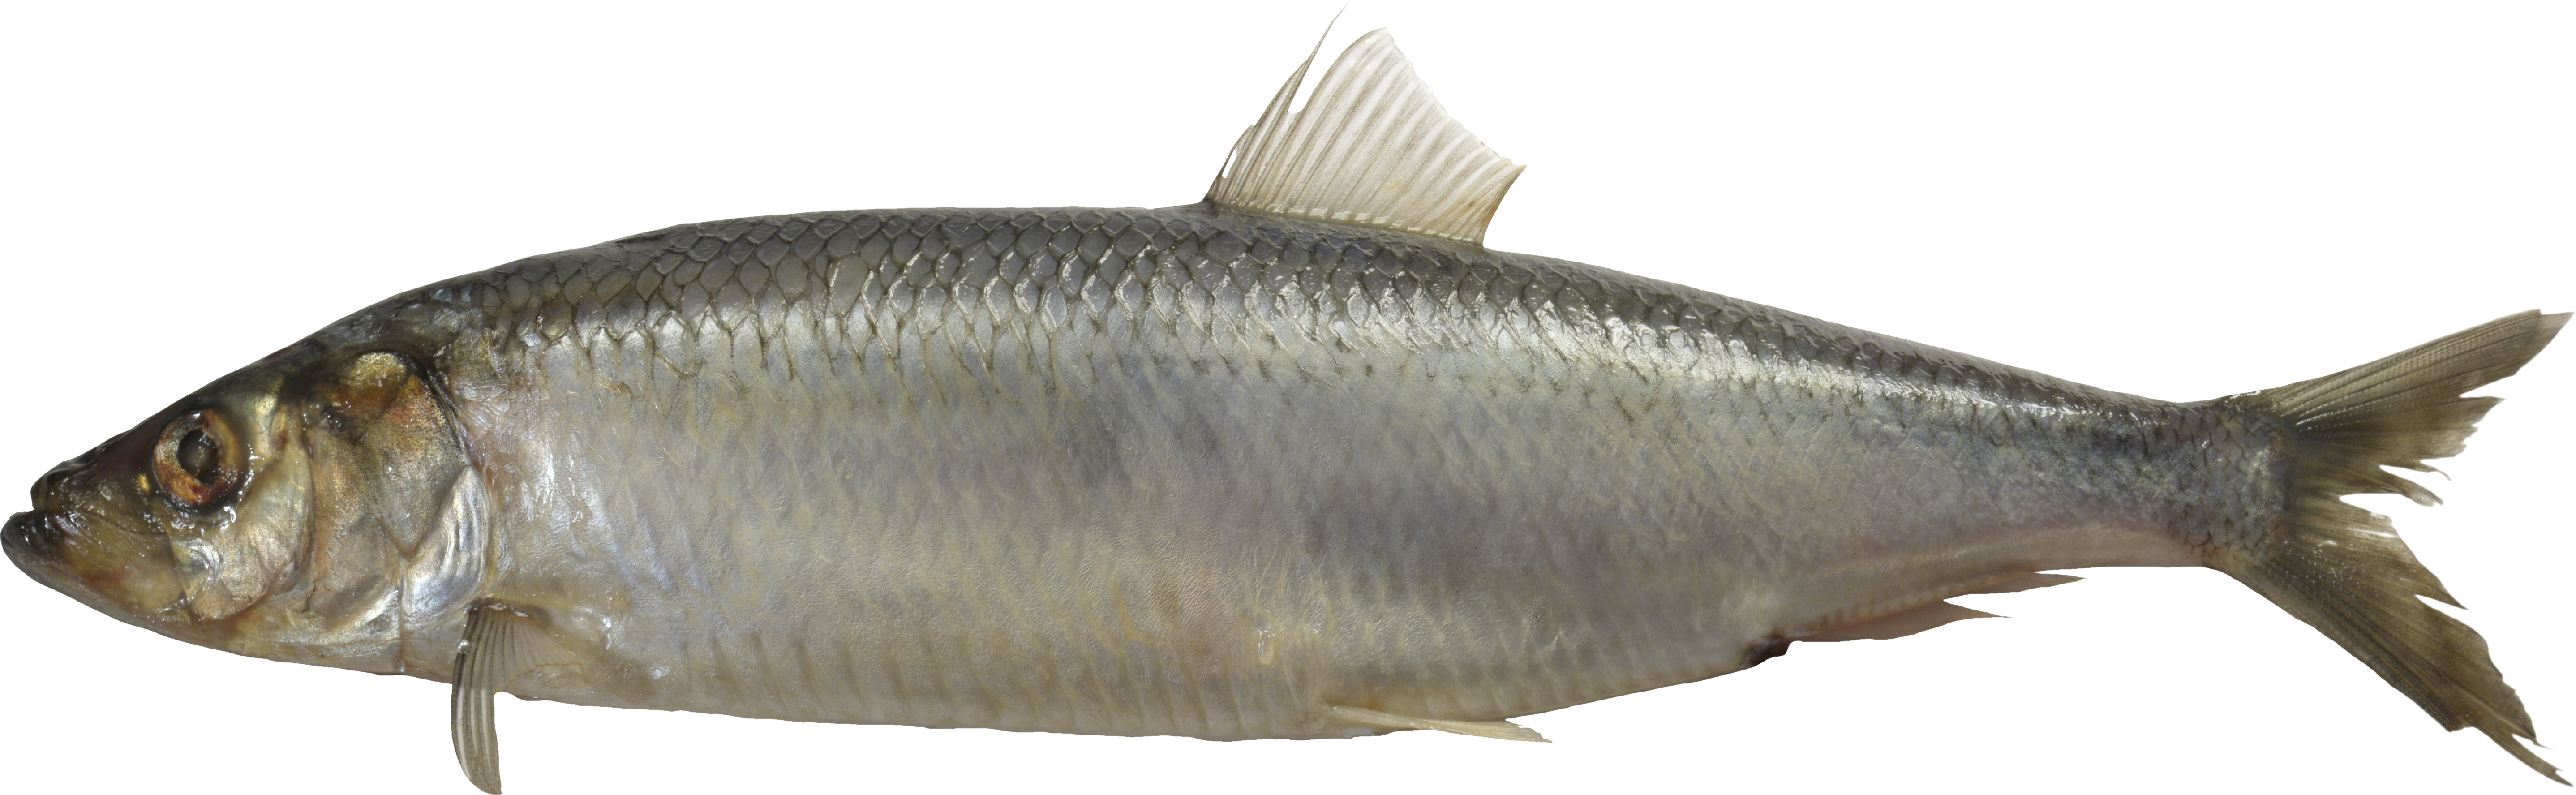 salmon clipart milkfish